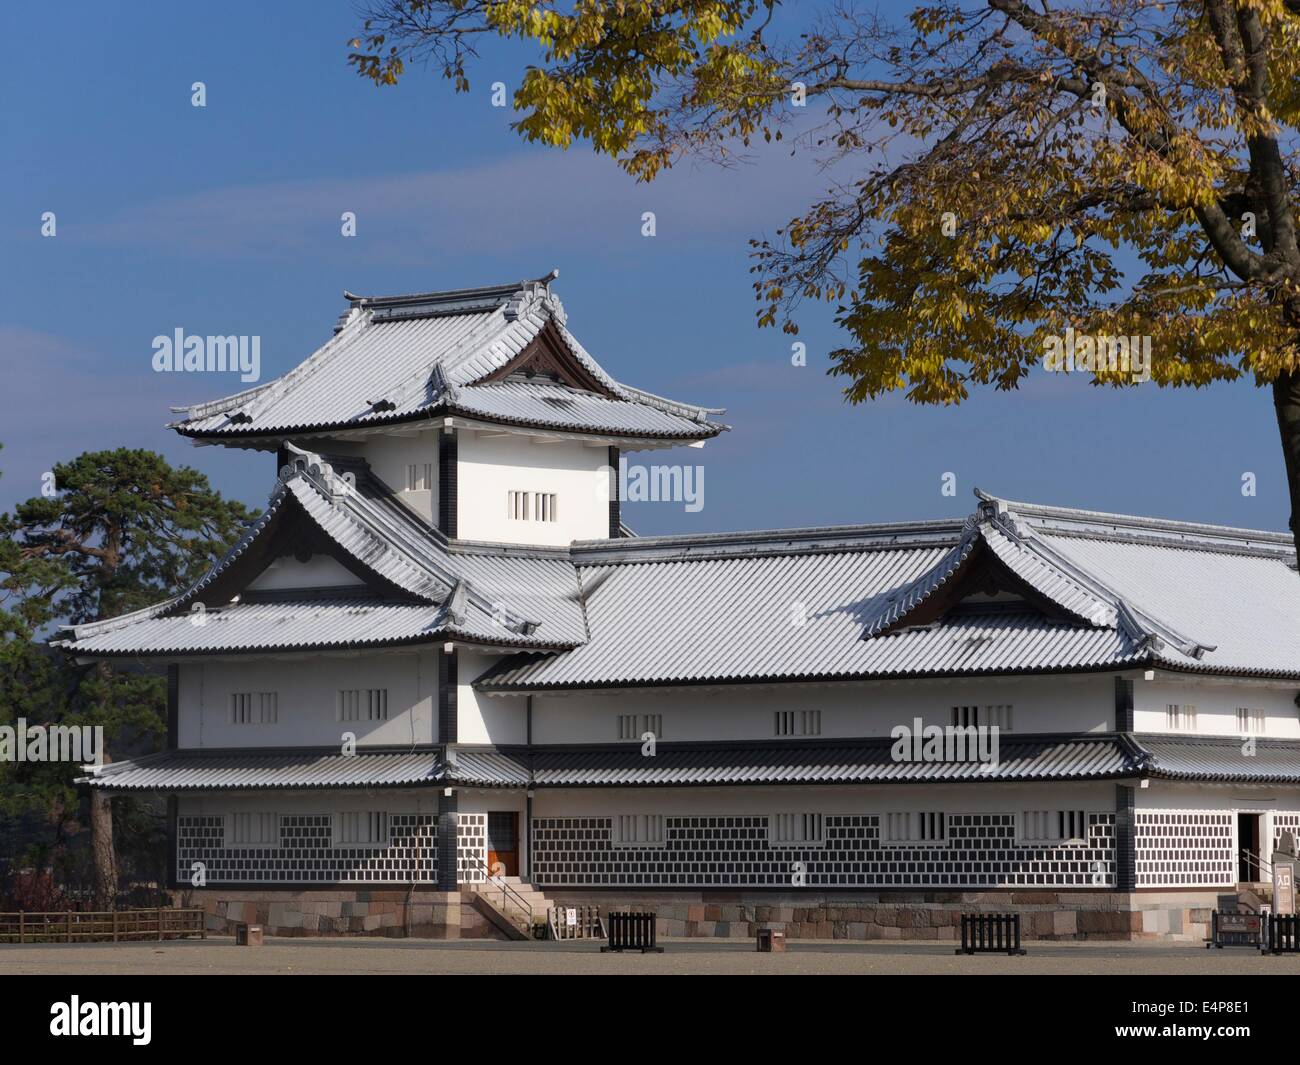 Kanazawa Castle in Kanazawa City, Ishikawa Prefecture, Japan Stock Photo